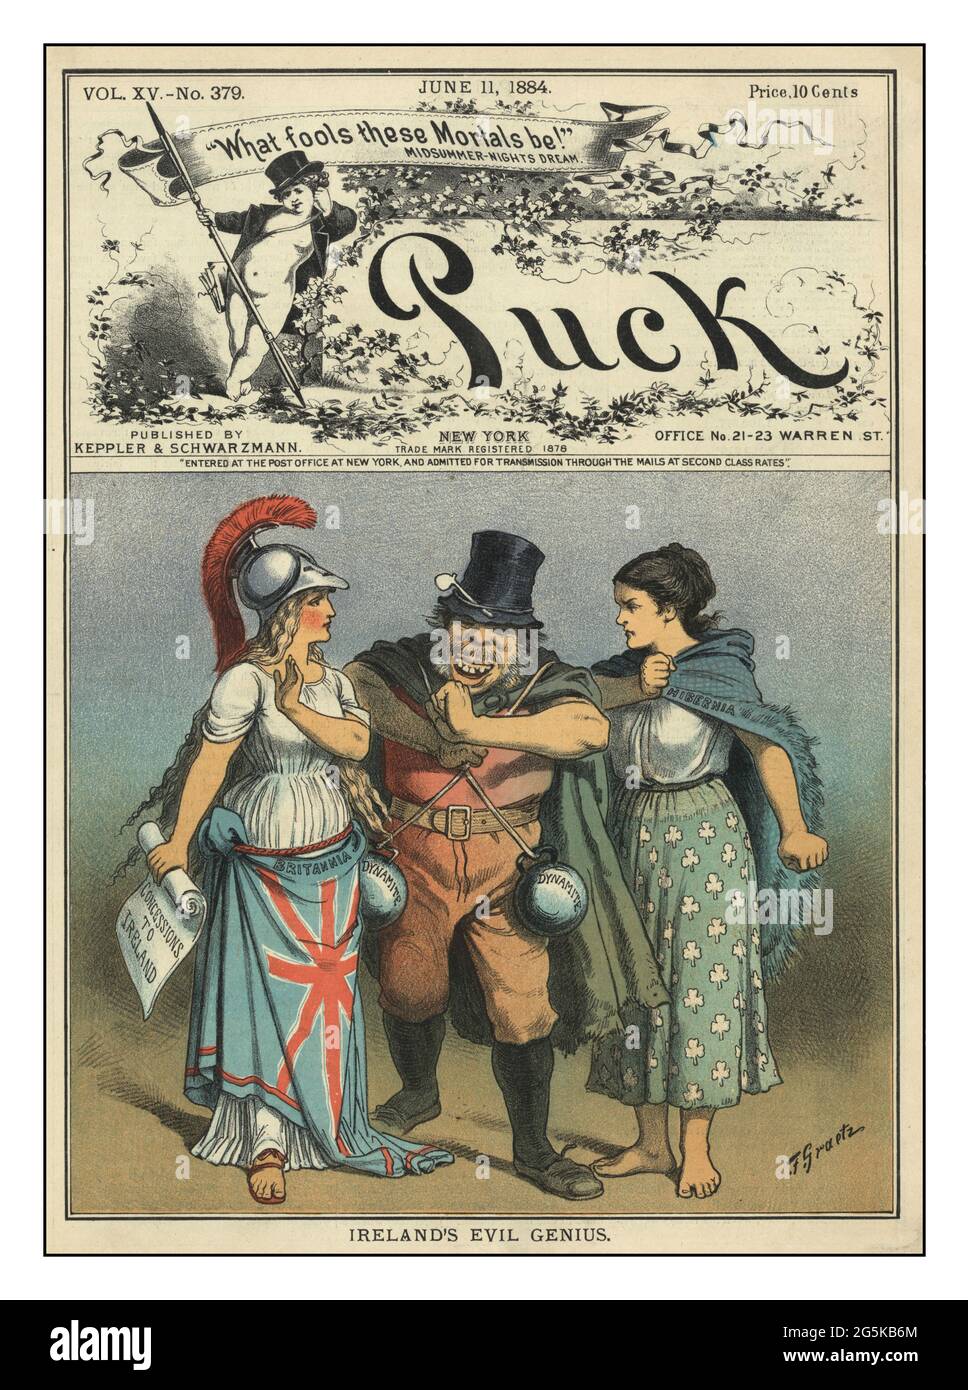 CIreland's male genio / F. Graetz. L'illustrazione riassuntiva mostra 'Britannia' in piedi sulla sinistra, tenendo 'concessioni all'Irlanda' e 'Hibernia' in piedi sulla destra in una posizione militante; fra loro è un uomo che guarda brutto con due bombe 'dynamite' stese sulle sue spalle. Nomi dei collaboratori Graetz, F. (Friedrich), circa 1840-1913, artista creato / pubblicato N.Y. : pubblicato da Keppler & Schwarzmann, 1884 giugno 11. Oggetto - Britannia (carattere simbolico)--1880 -1890 - Irlanda--rappresentazione simbolica--1880 -1890 - autonomia--1880 -1890 - Relazioni internazionali-- Foto Stock